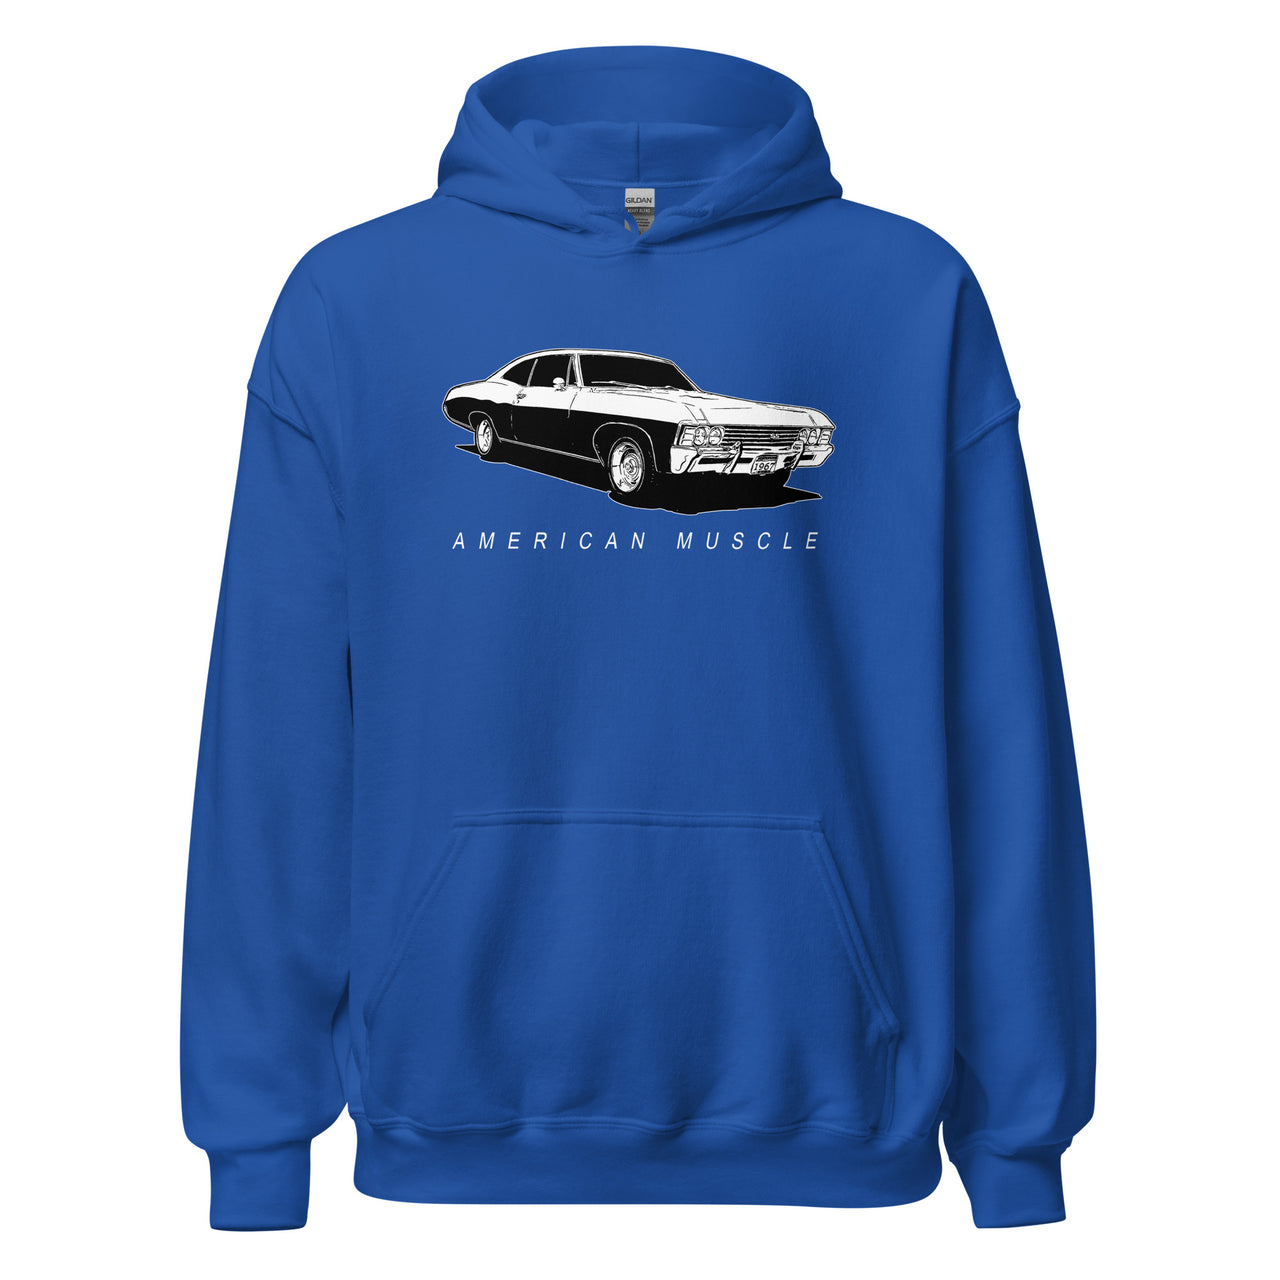 1967 Impala Hoodie American Muscle Car Sweatshirt in royal